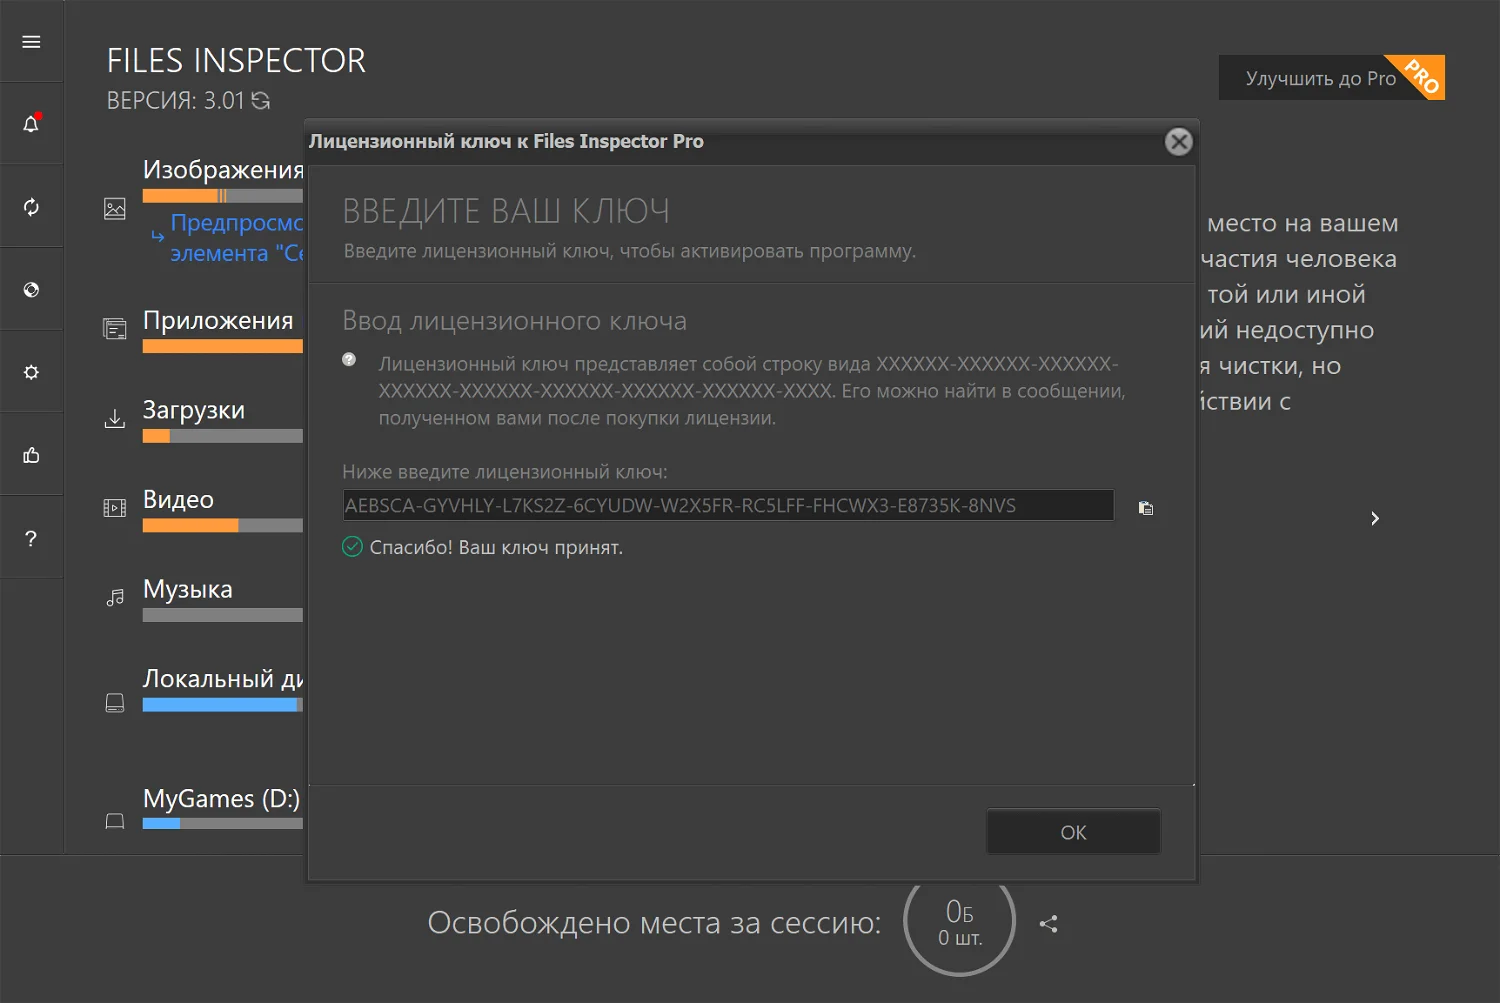 Files Inspector Pro Serial keys Free Download Full Version